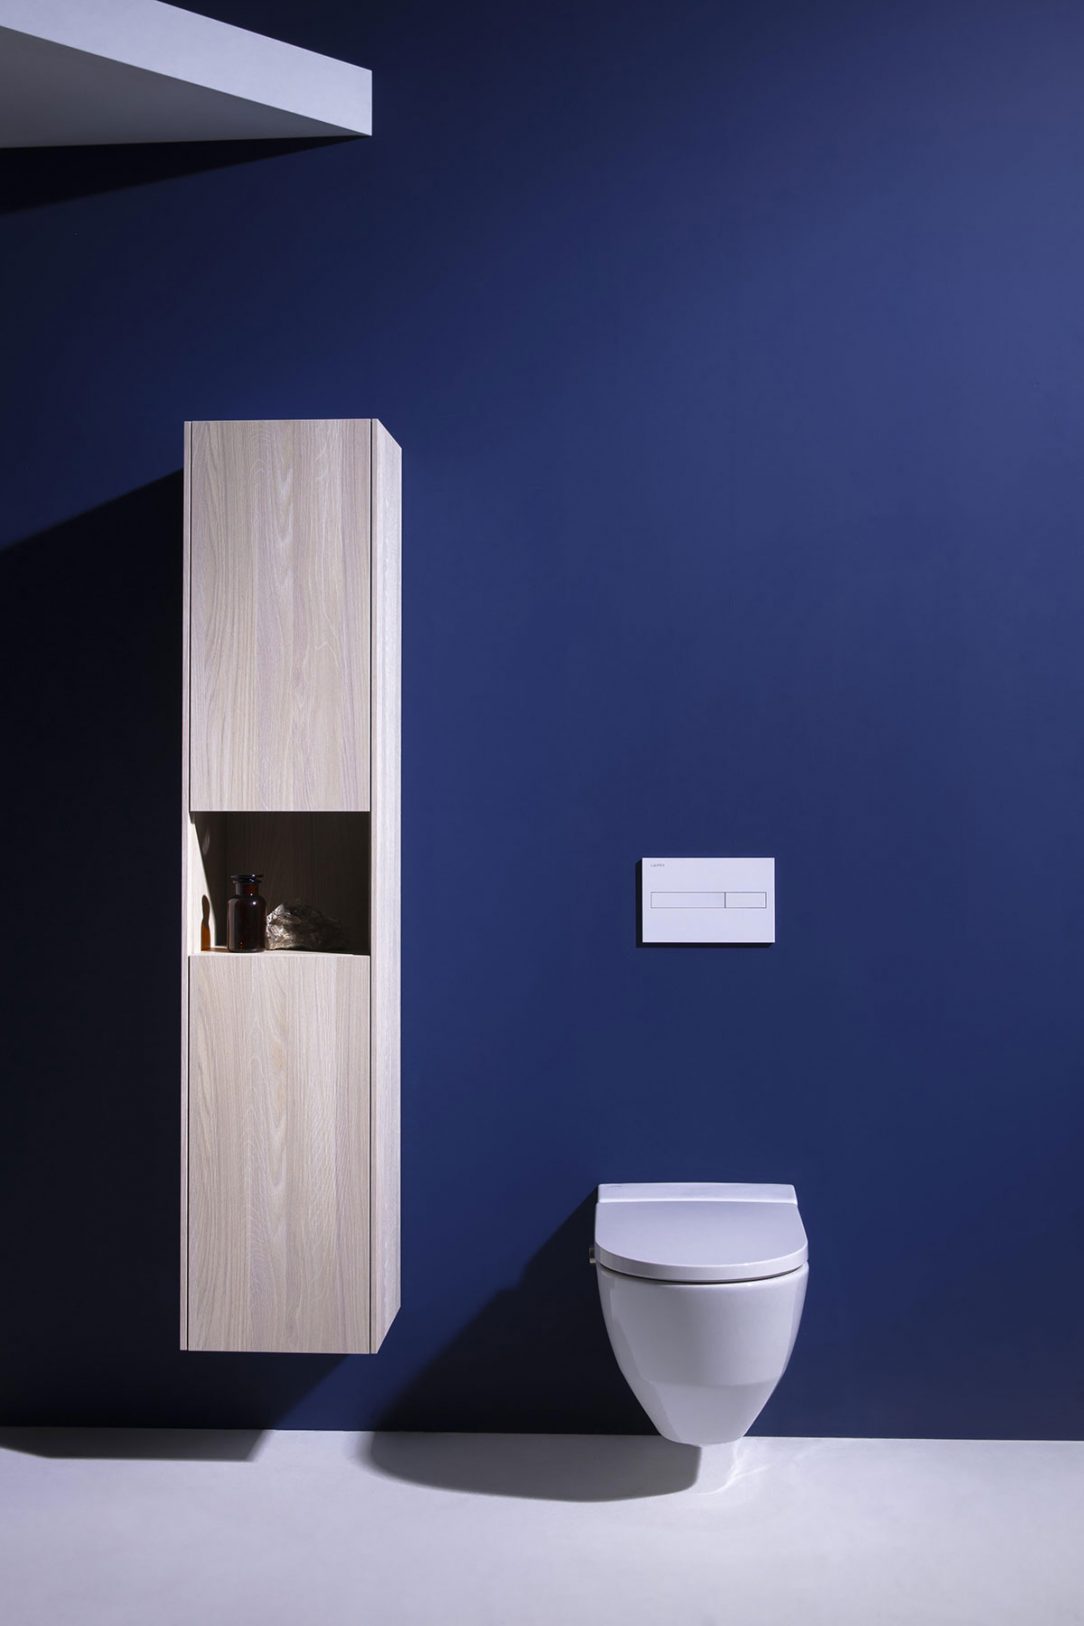 Minimalistický design se hodí do jakékoli koupelny a toaleta je k nerozeznání od běžné